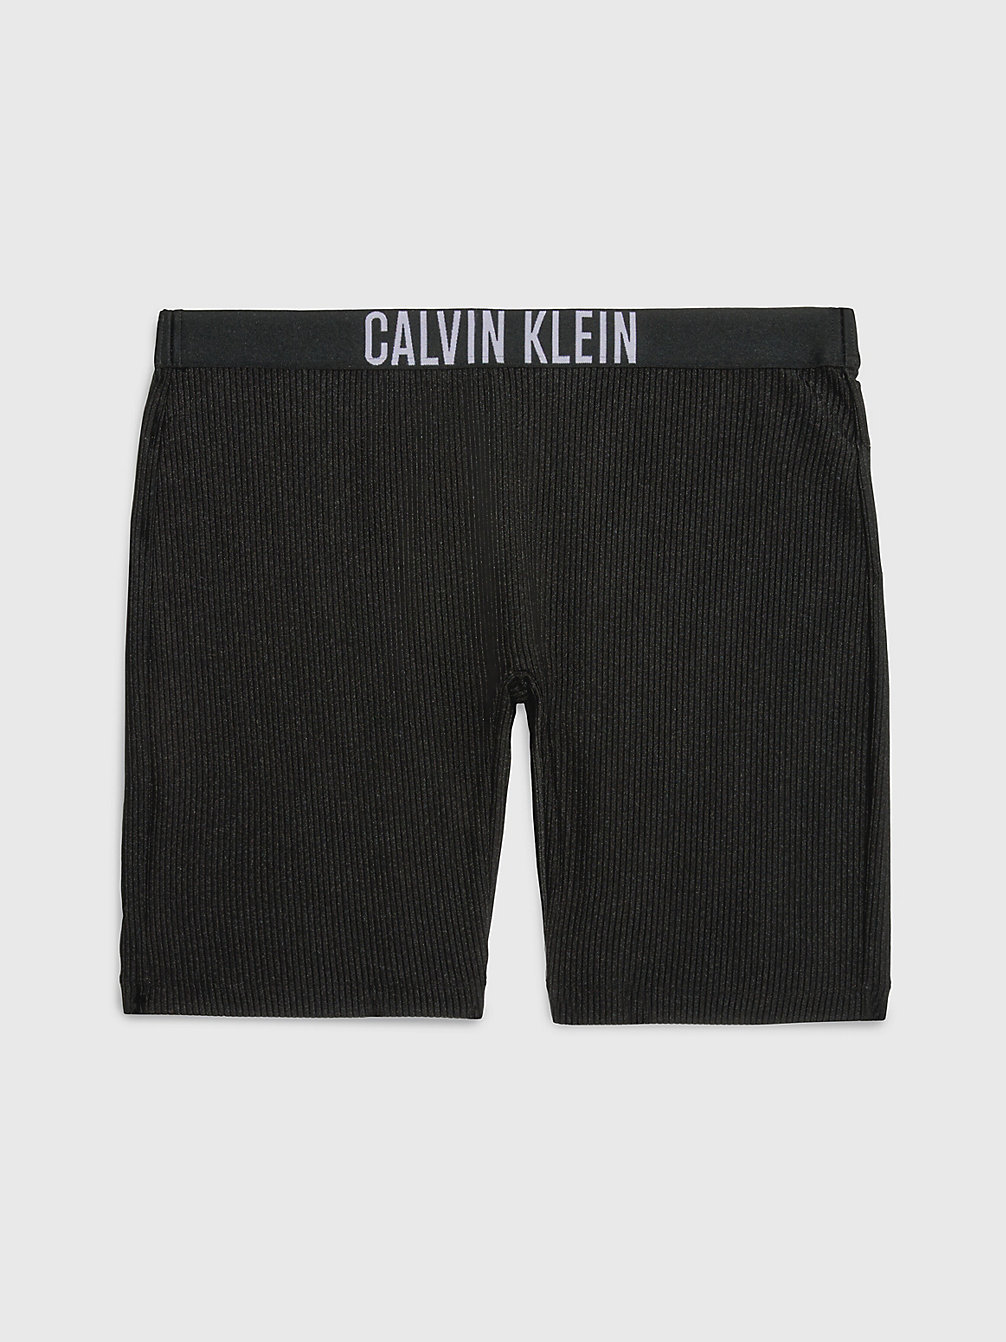 PVH BLACK Swim Shorts - Intense Power undefined women Calvin Klein